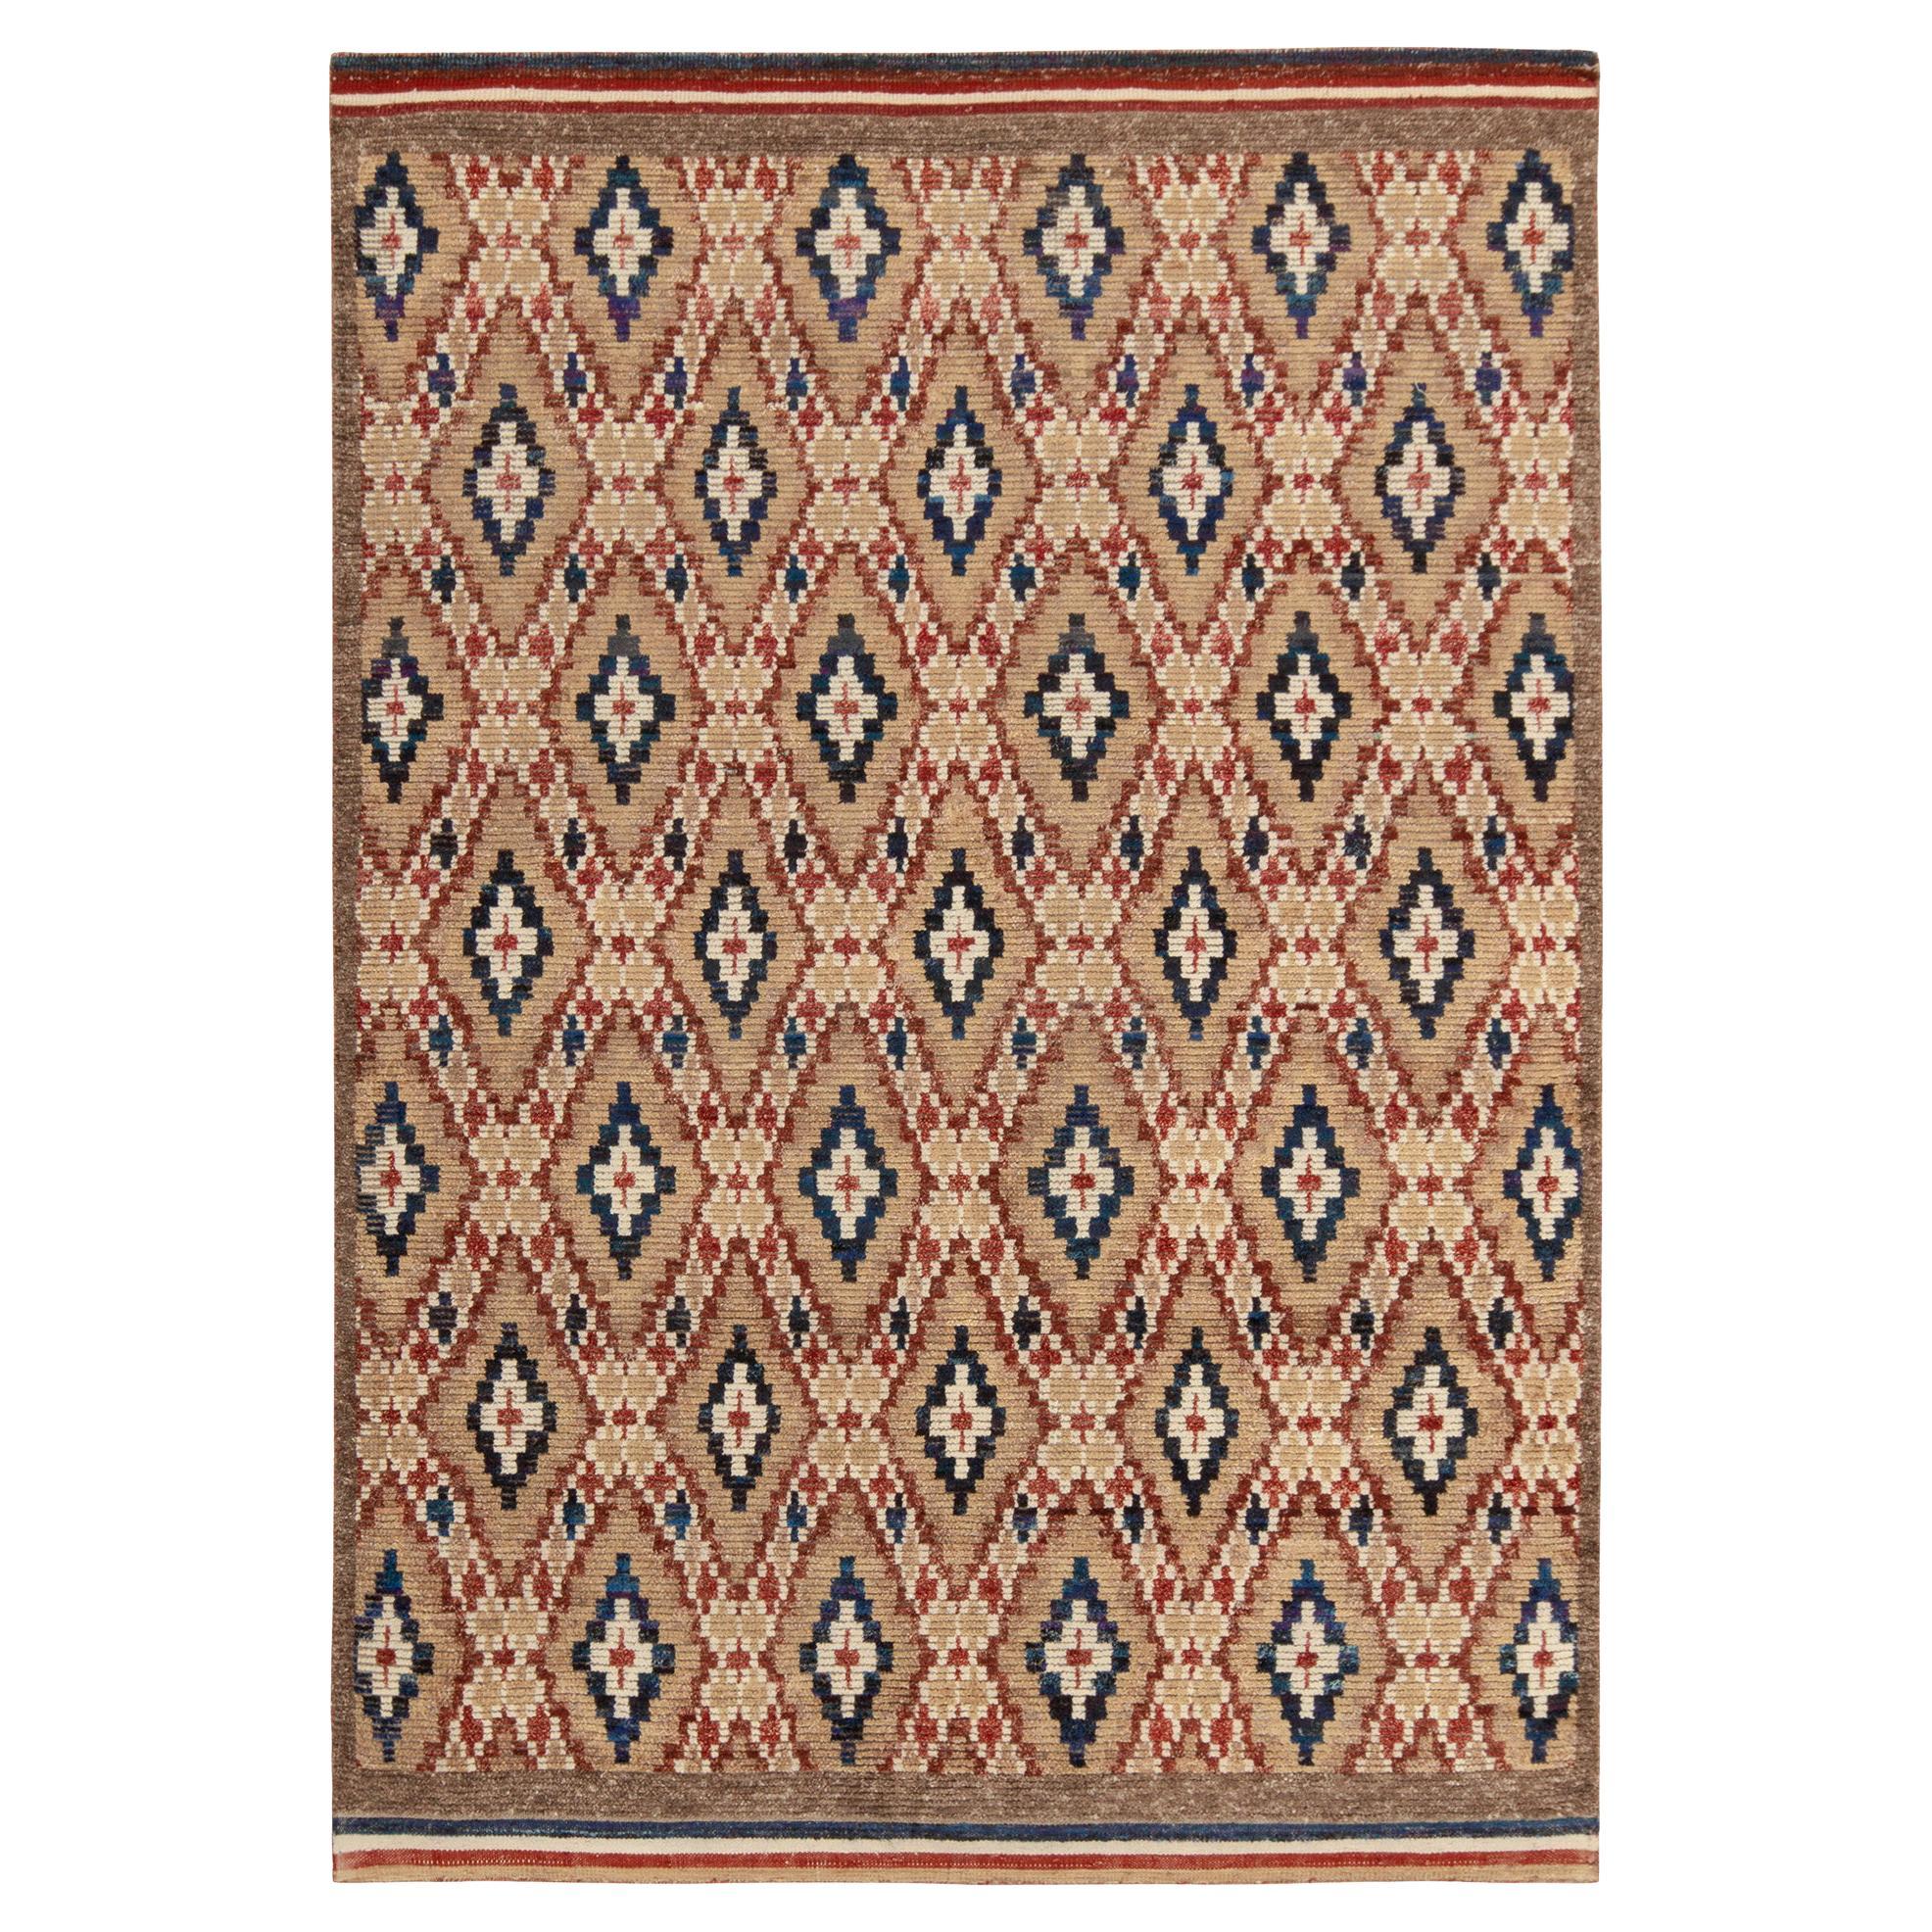 Marokkanischer Teppich und Kelim-Teppich im marokkanischen Stil mit beige-braunen, roten und blauen Diamantmustern